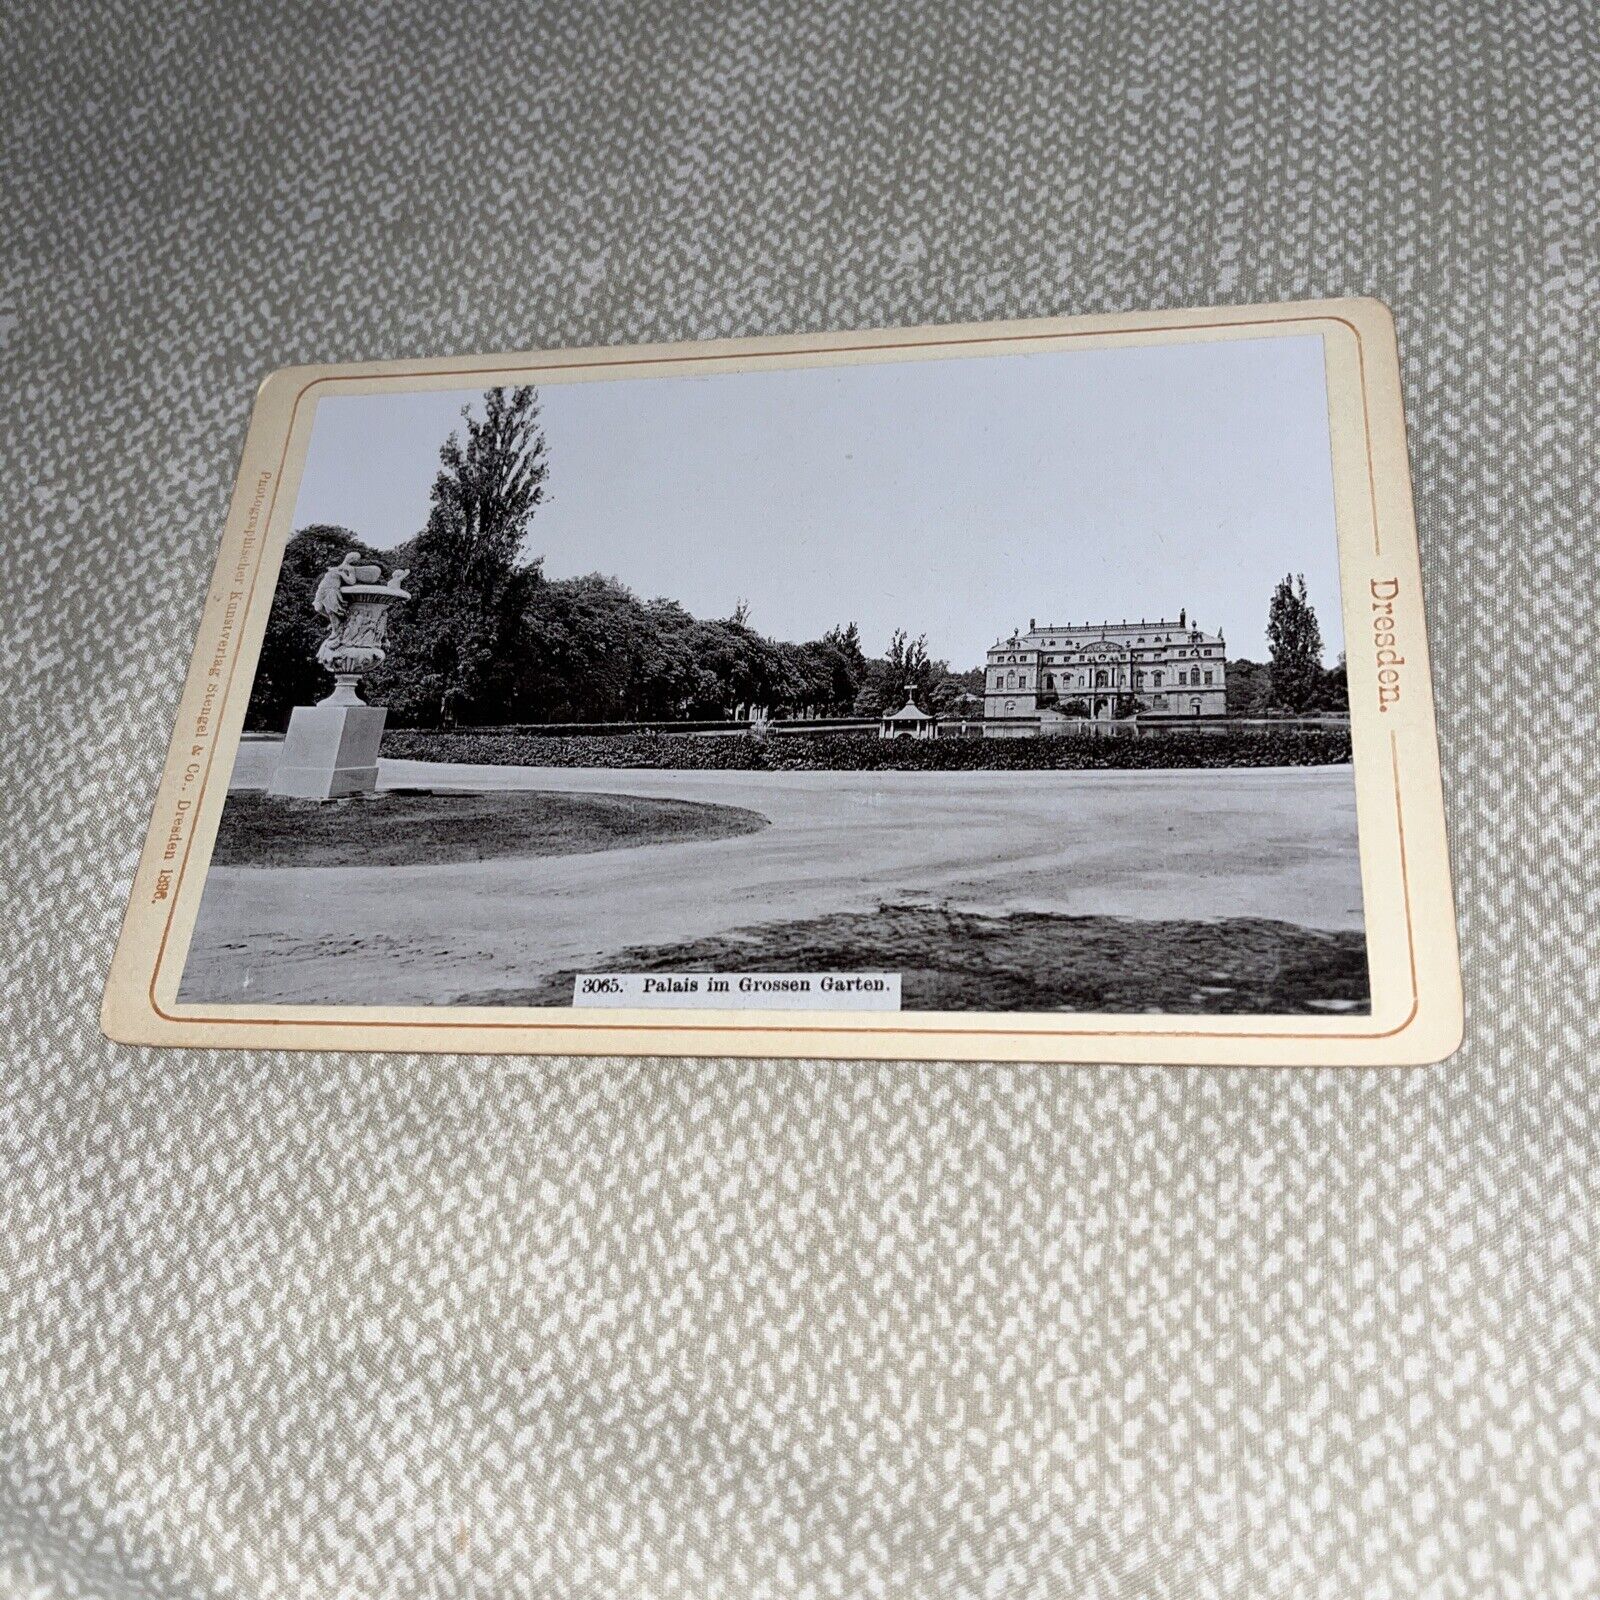 Antique Cabinet Card Photo: Palais in Grossen Garten Grand Garden Palace Dresden